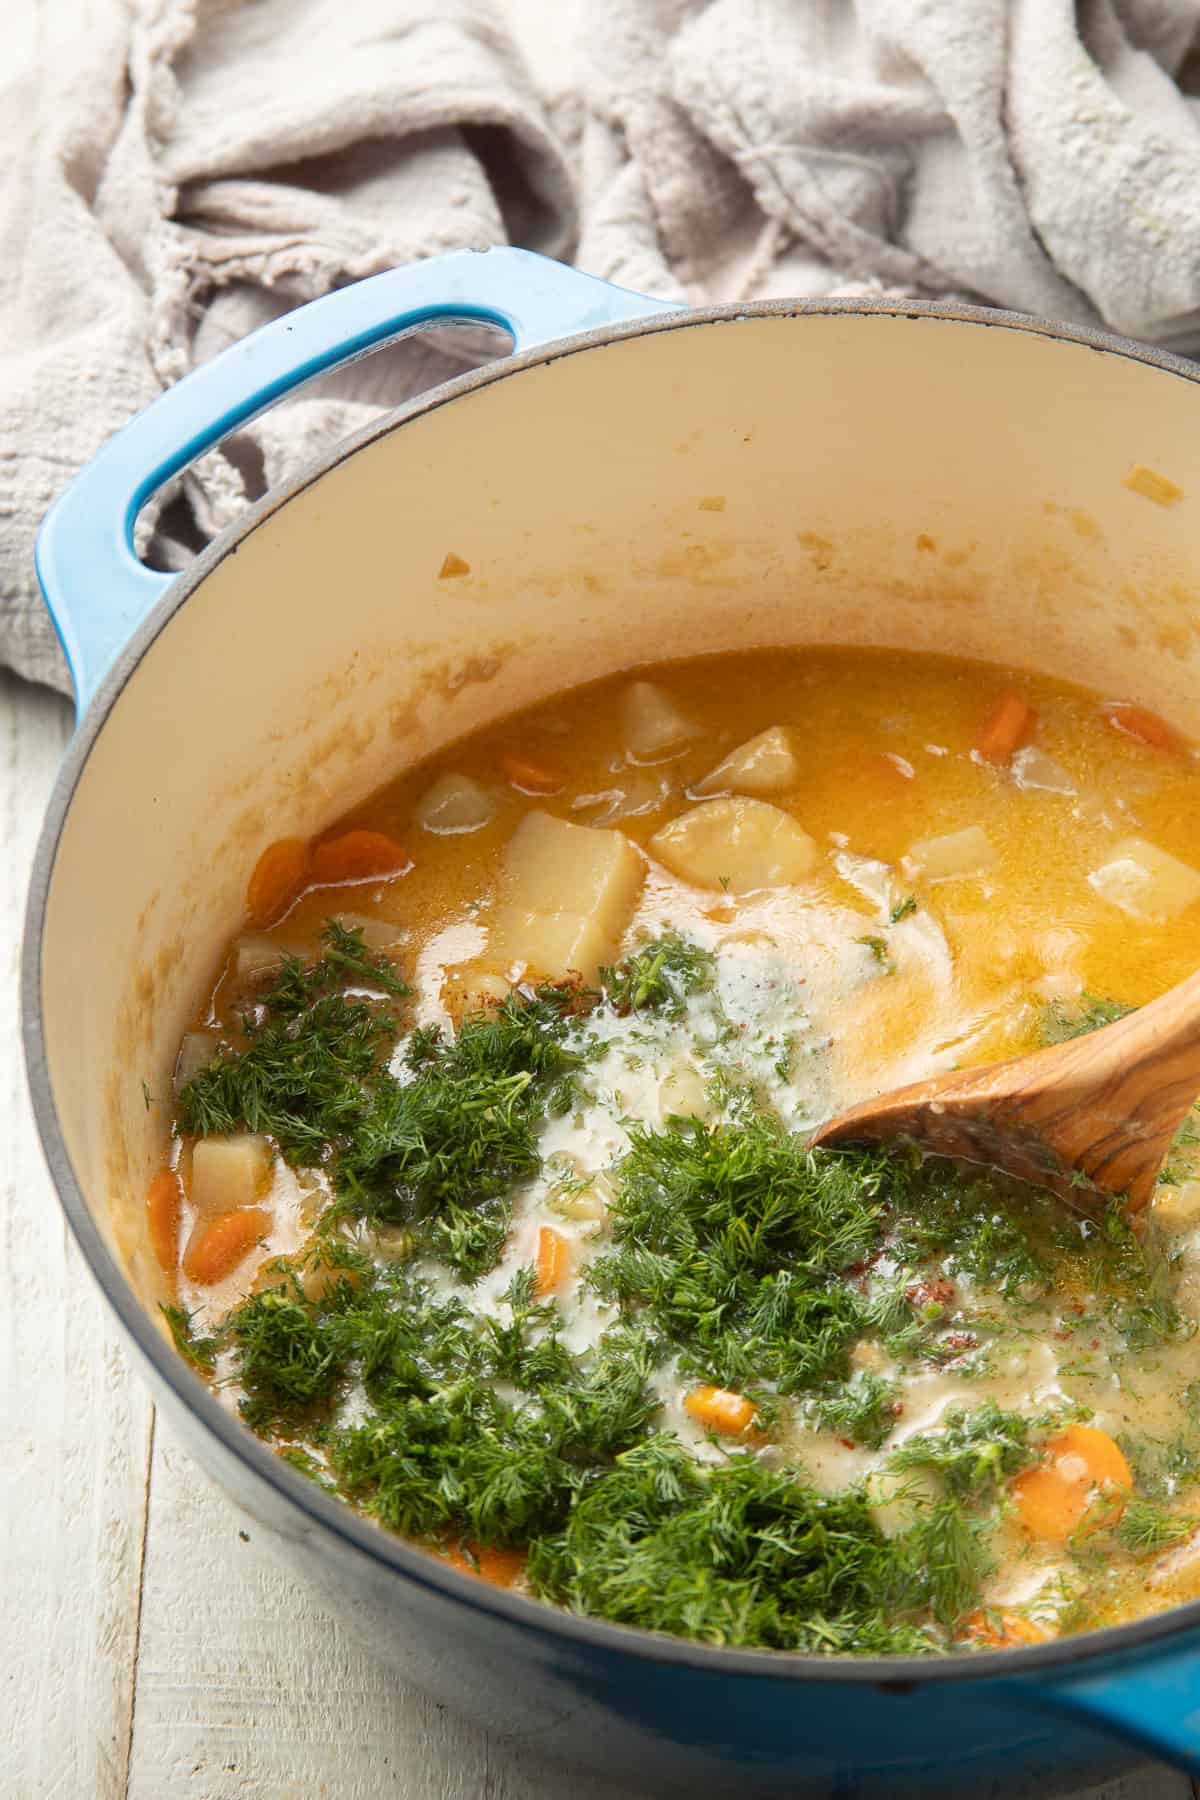 Spoon stirring chopped dill into a pot of potato soup.